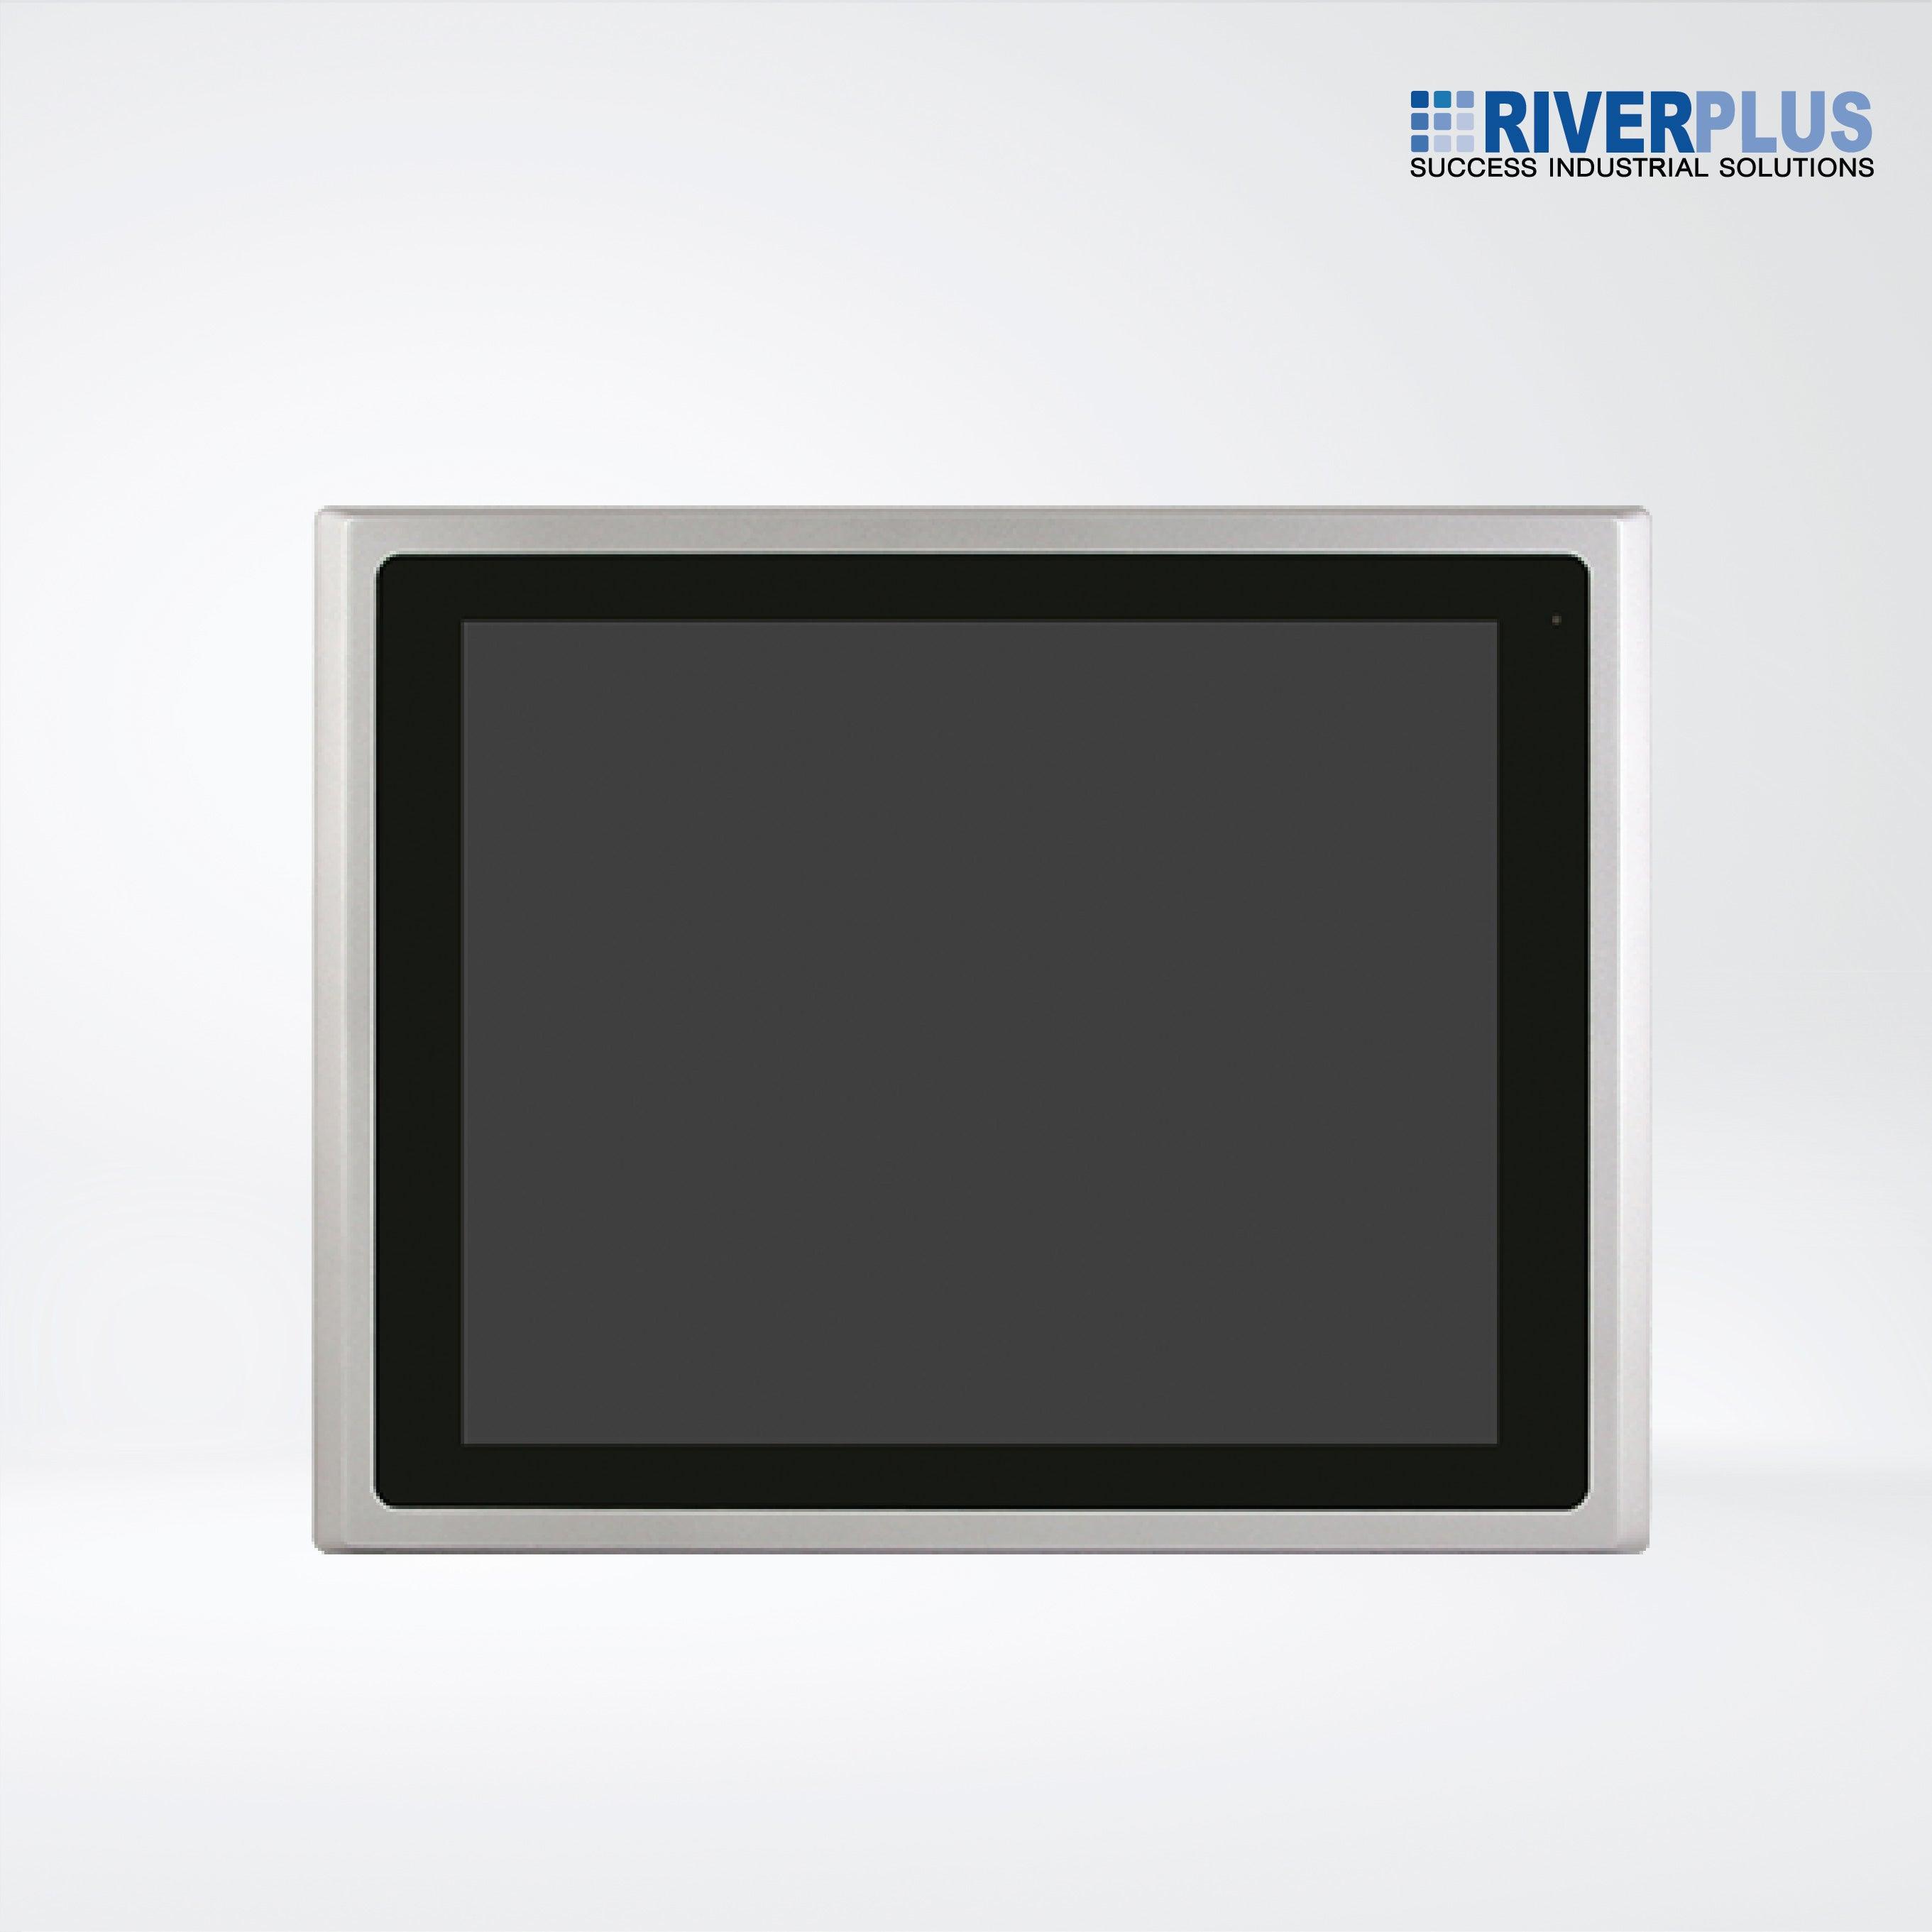 ARCHMI-817APH 17" Intel Apollo Lake N4200/N3350 Fanless Industrial Compact Size Panel PC - Riverplus